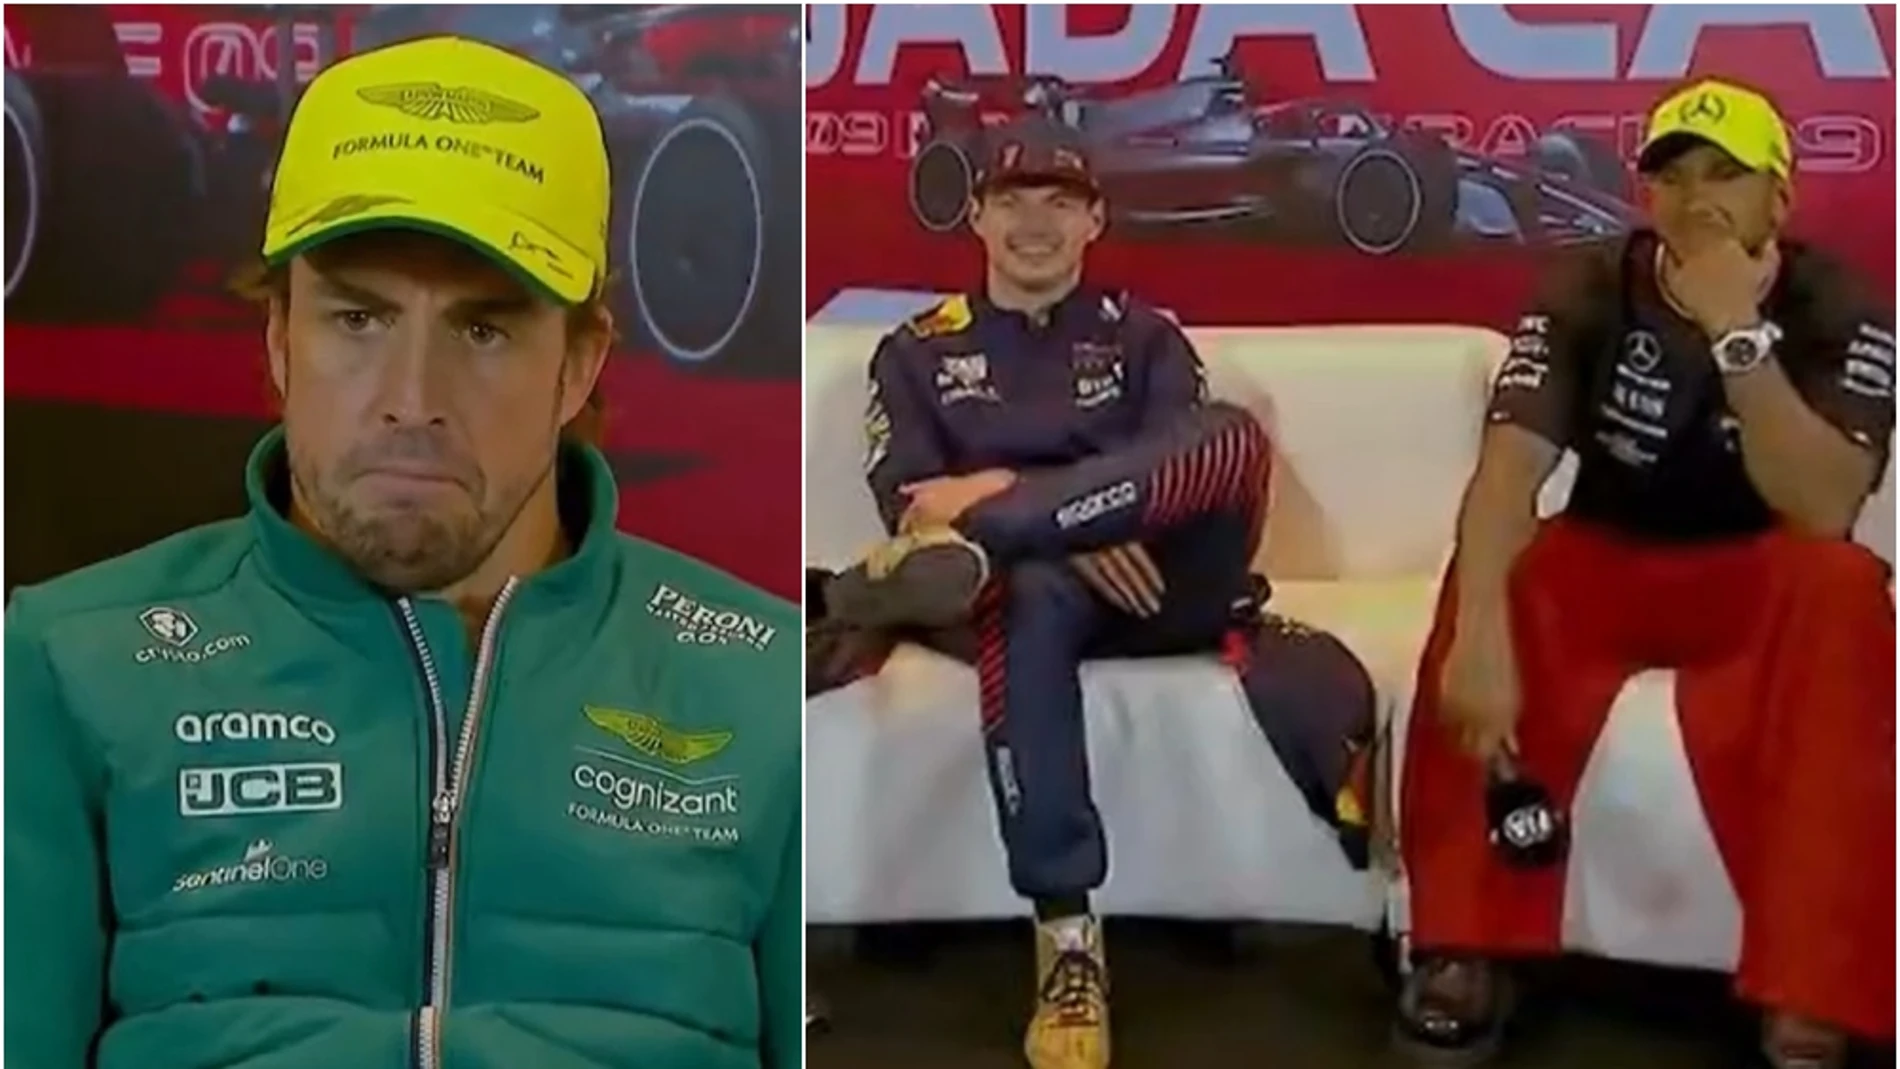 La reacción de Verstappen cuando Alonso afirma que puede superar a Pérez